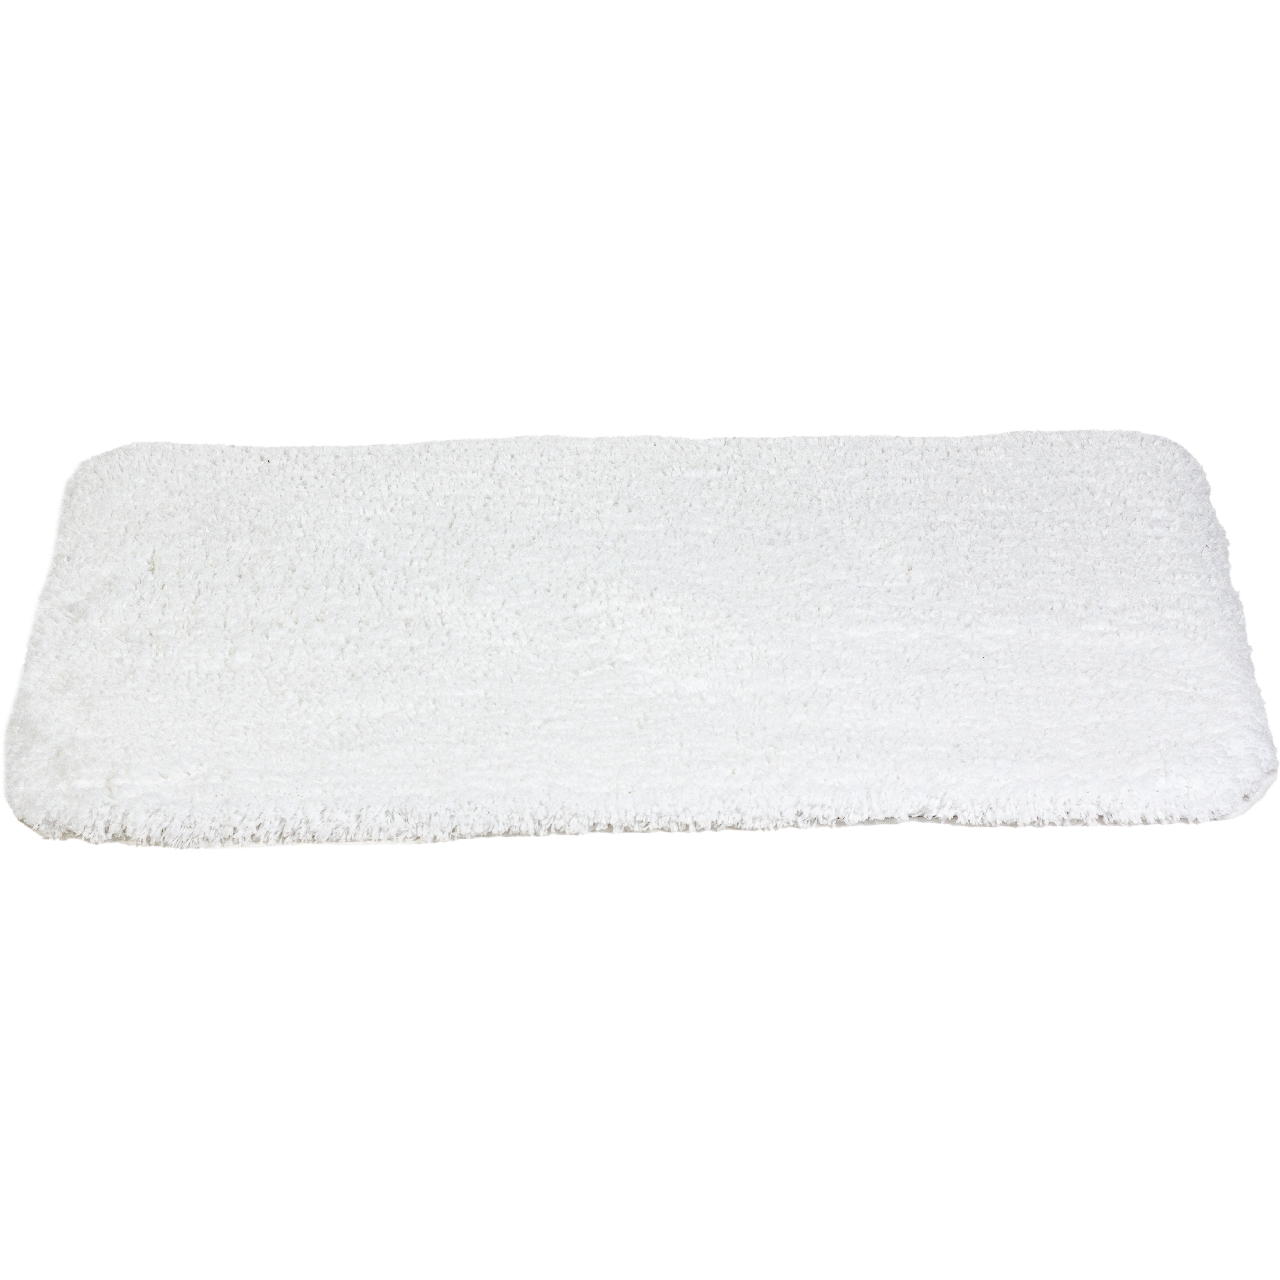 Коврик для ванной Lamb белый, 55 x 65 см (Spirella 1015272)